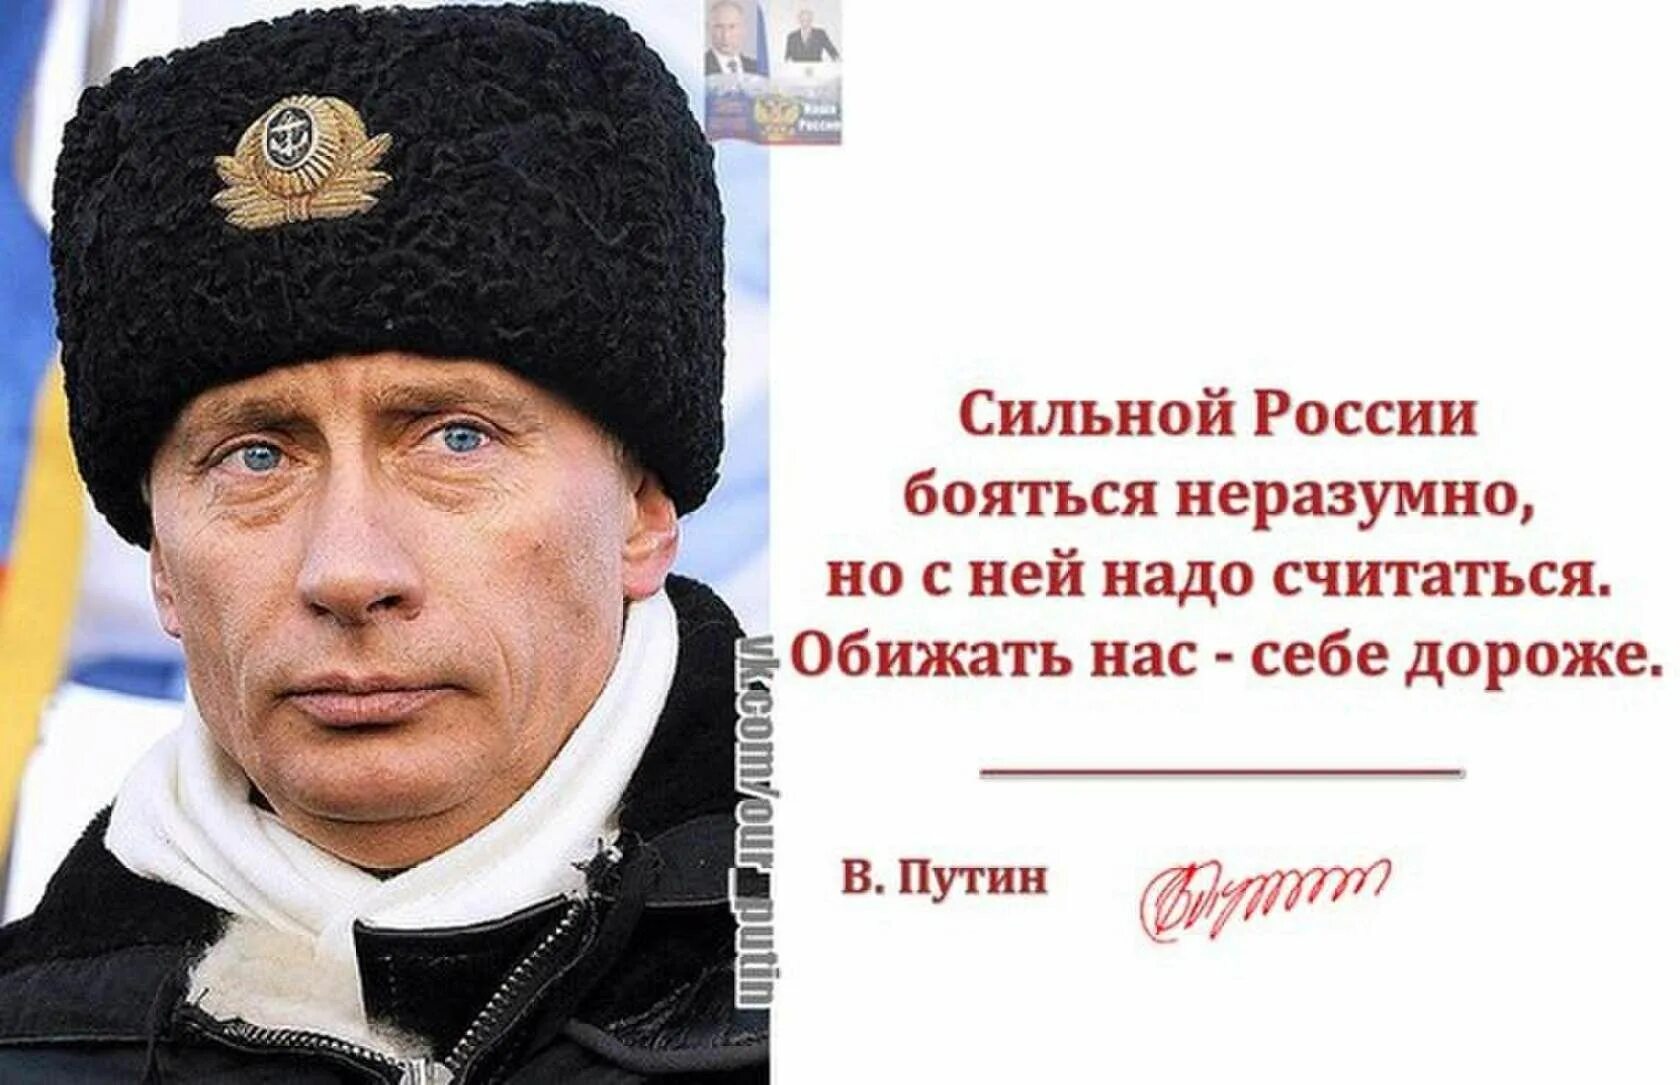 Все боятся россии. Цитаты Путина про сильную Россию. Цитаты про сильную Россию.